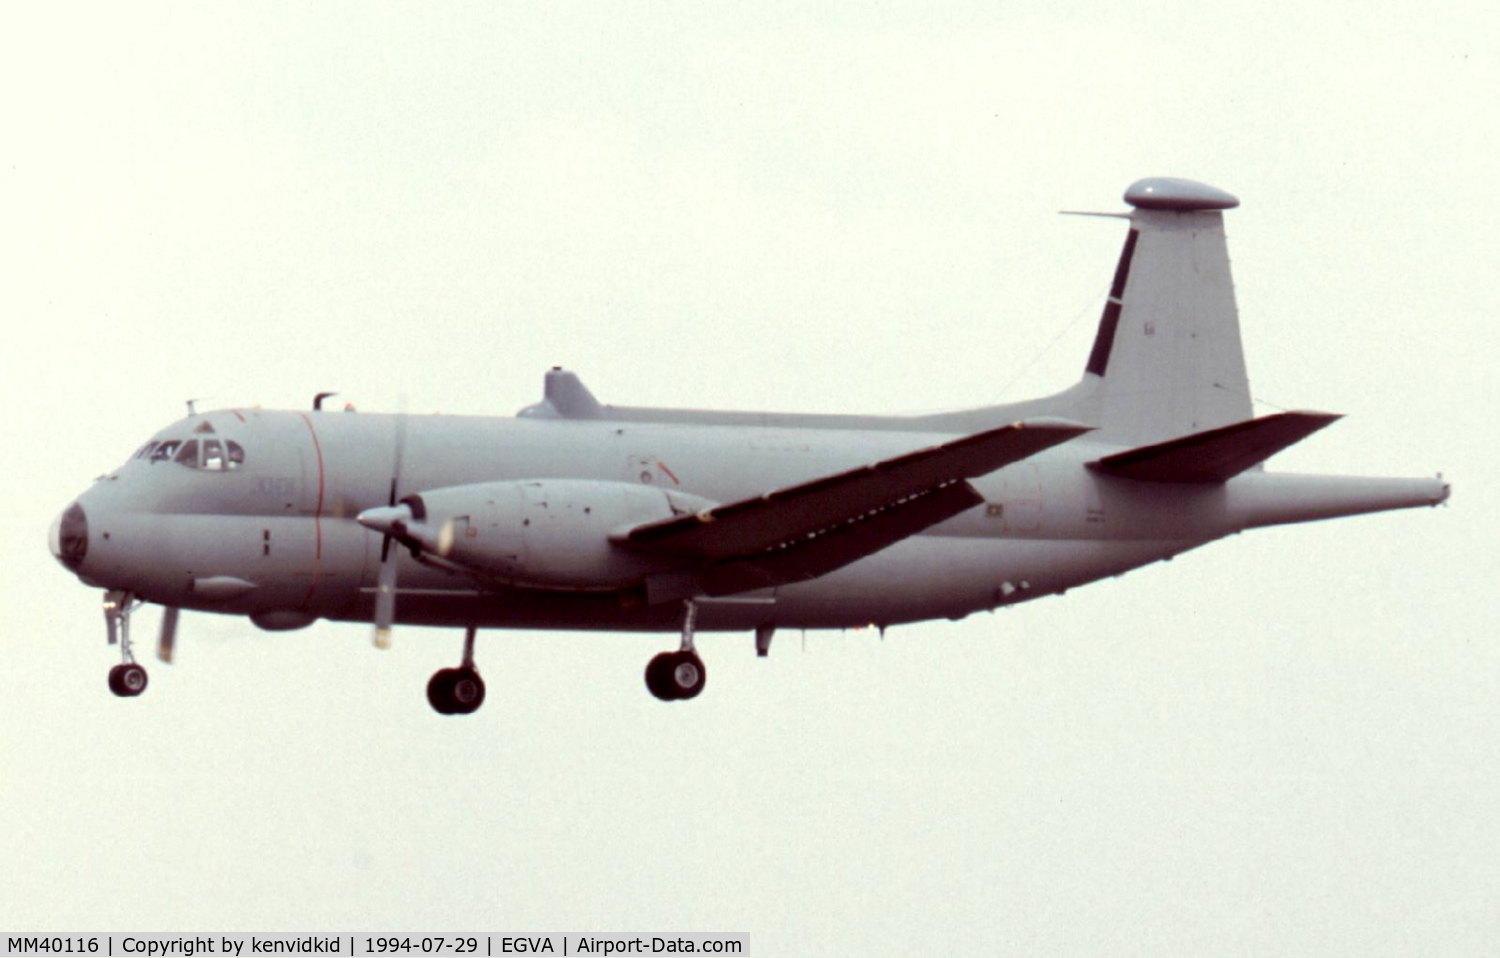 MM40116, Breguet 1150 Atlantic C/N 17, Italian Air Force arriving for RIAT.